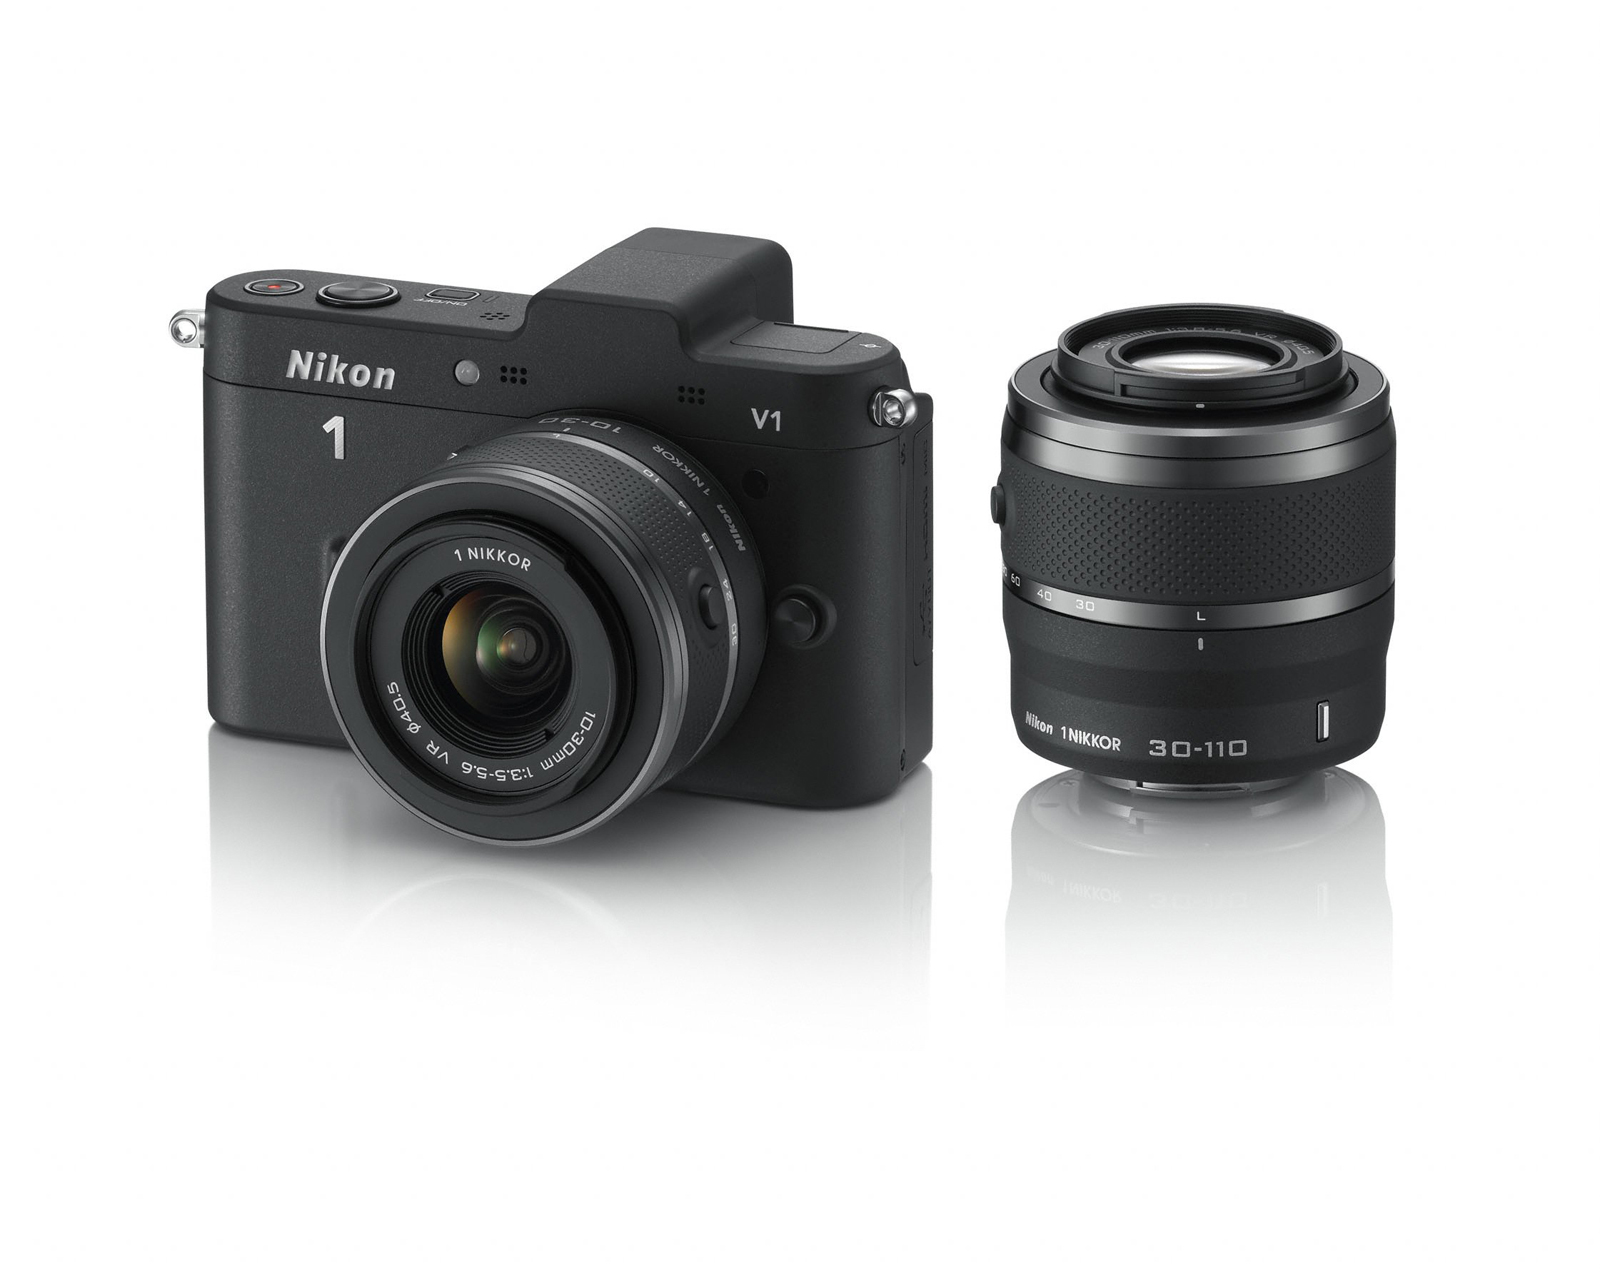 Nikon 1 V1 Digital Camera Features & Technical Specs